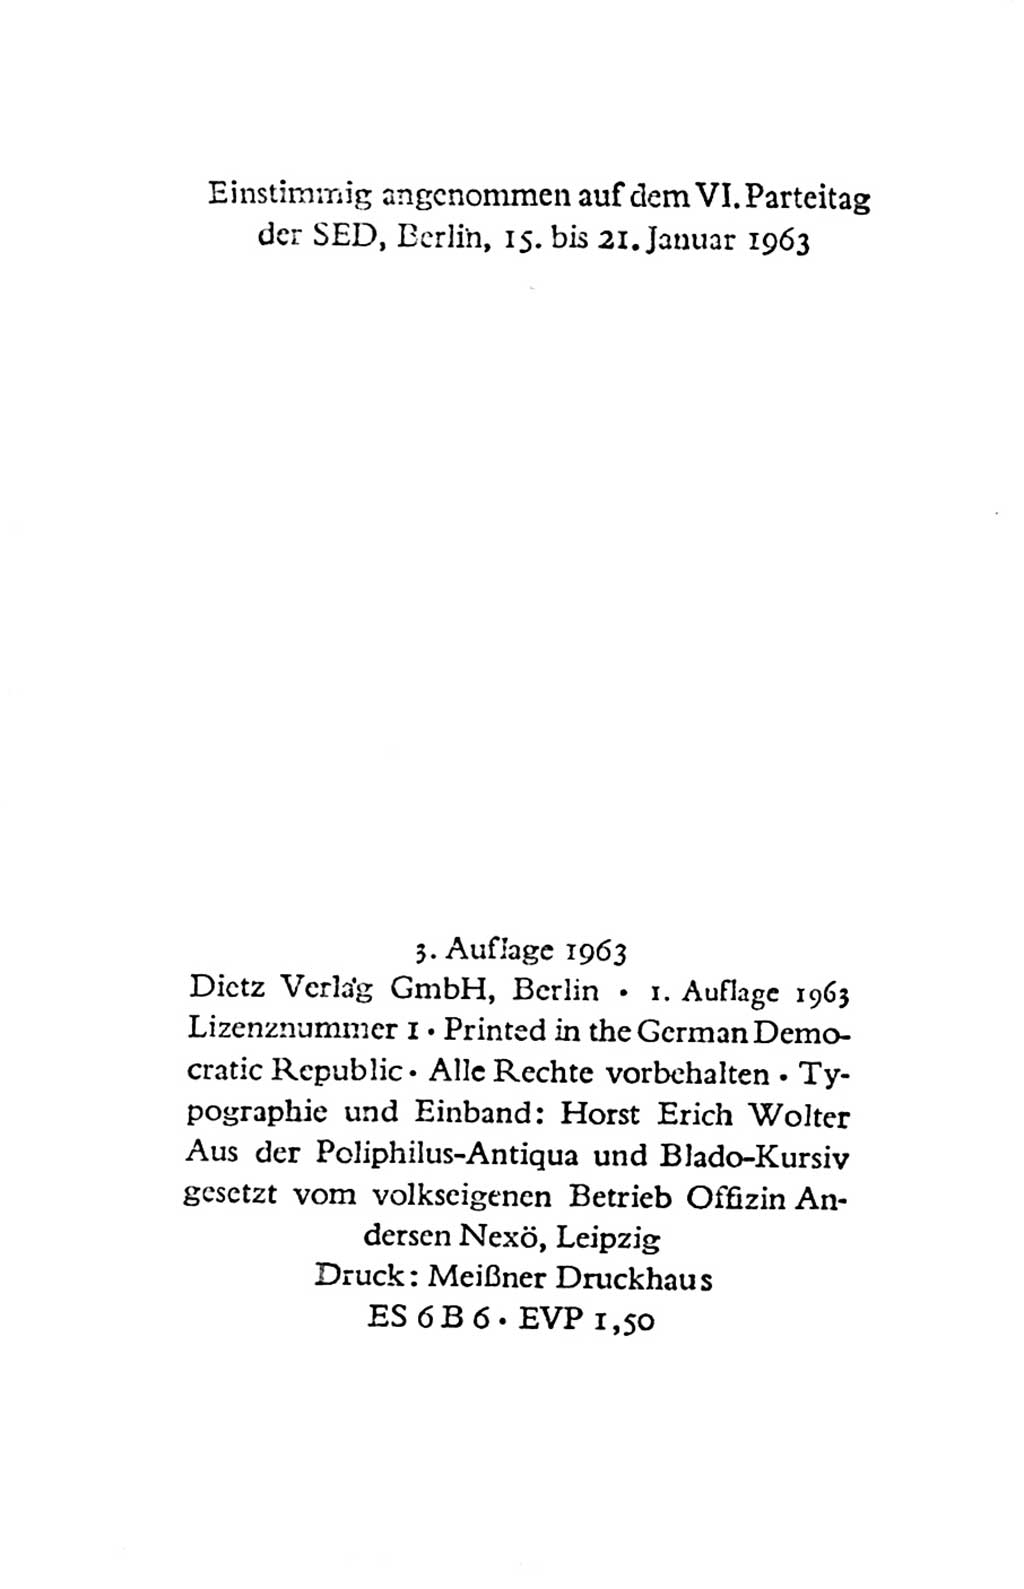 Statut der Sozialistischen Einheitspartei Deutschlands (SED) 1963, Seite 4 (St. SED DDR 1963, S. 4)